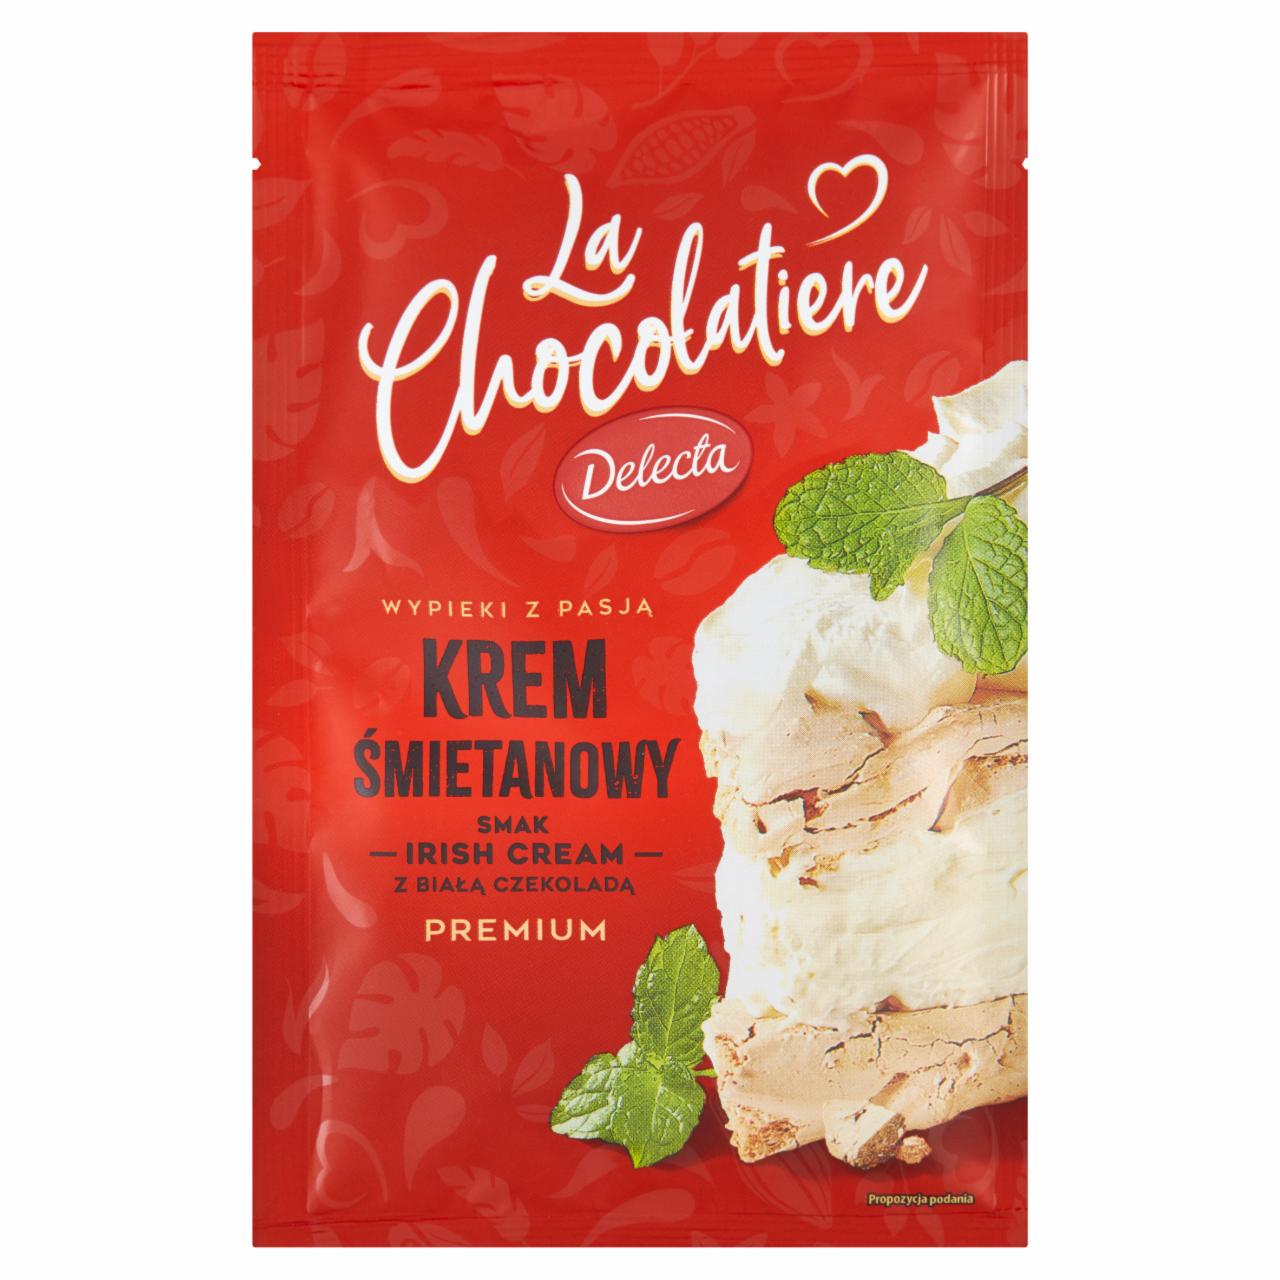 Zdjęcia - Delecta La Chocolatiere Premium Krem śmietanowy smak irish cream 71 g